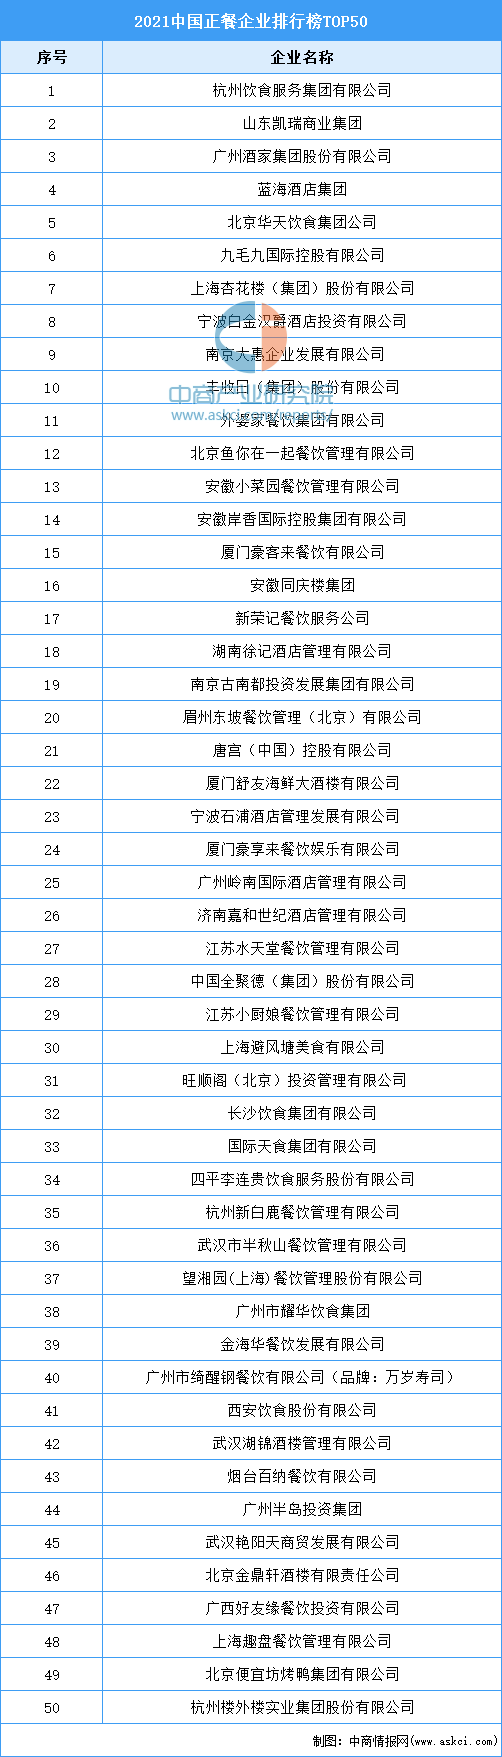 中国私企排行榜_2021中国房地产品牌价值排行榜中国房地产企业排名100强